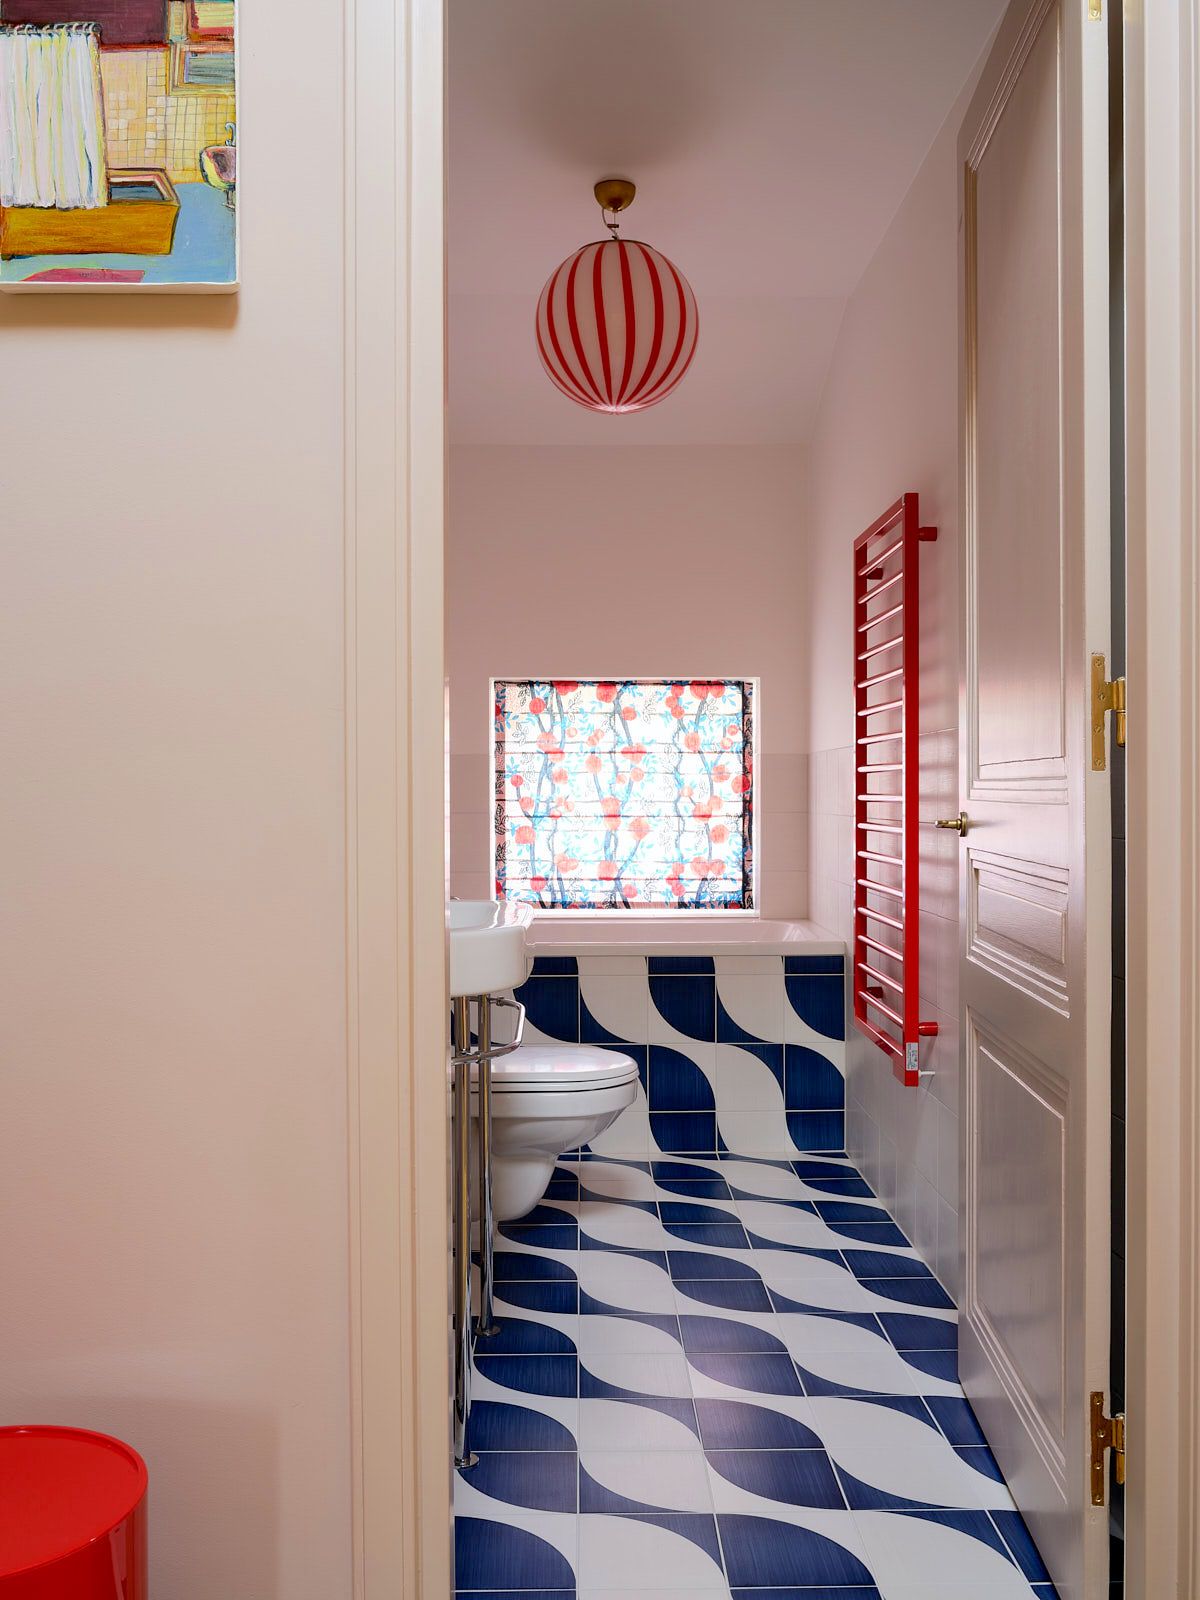 Tips to Paint Floor Tile in your Bathroom